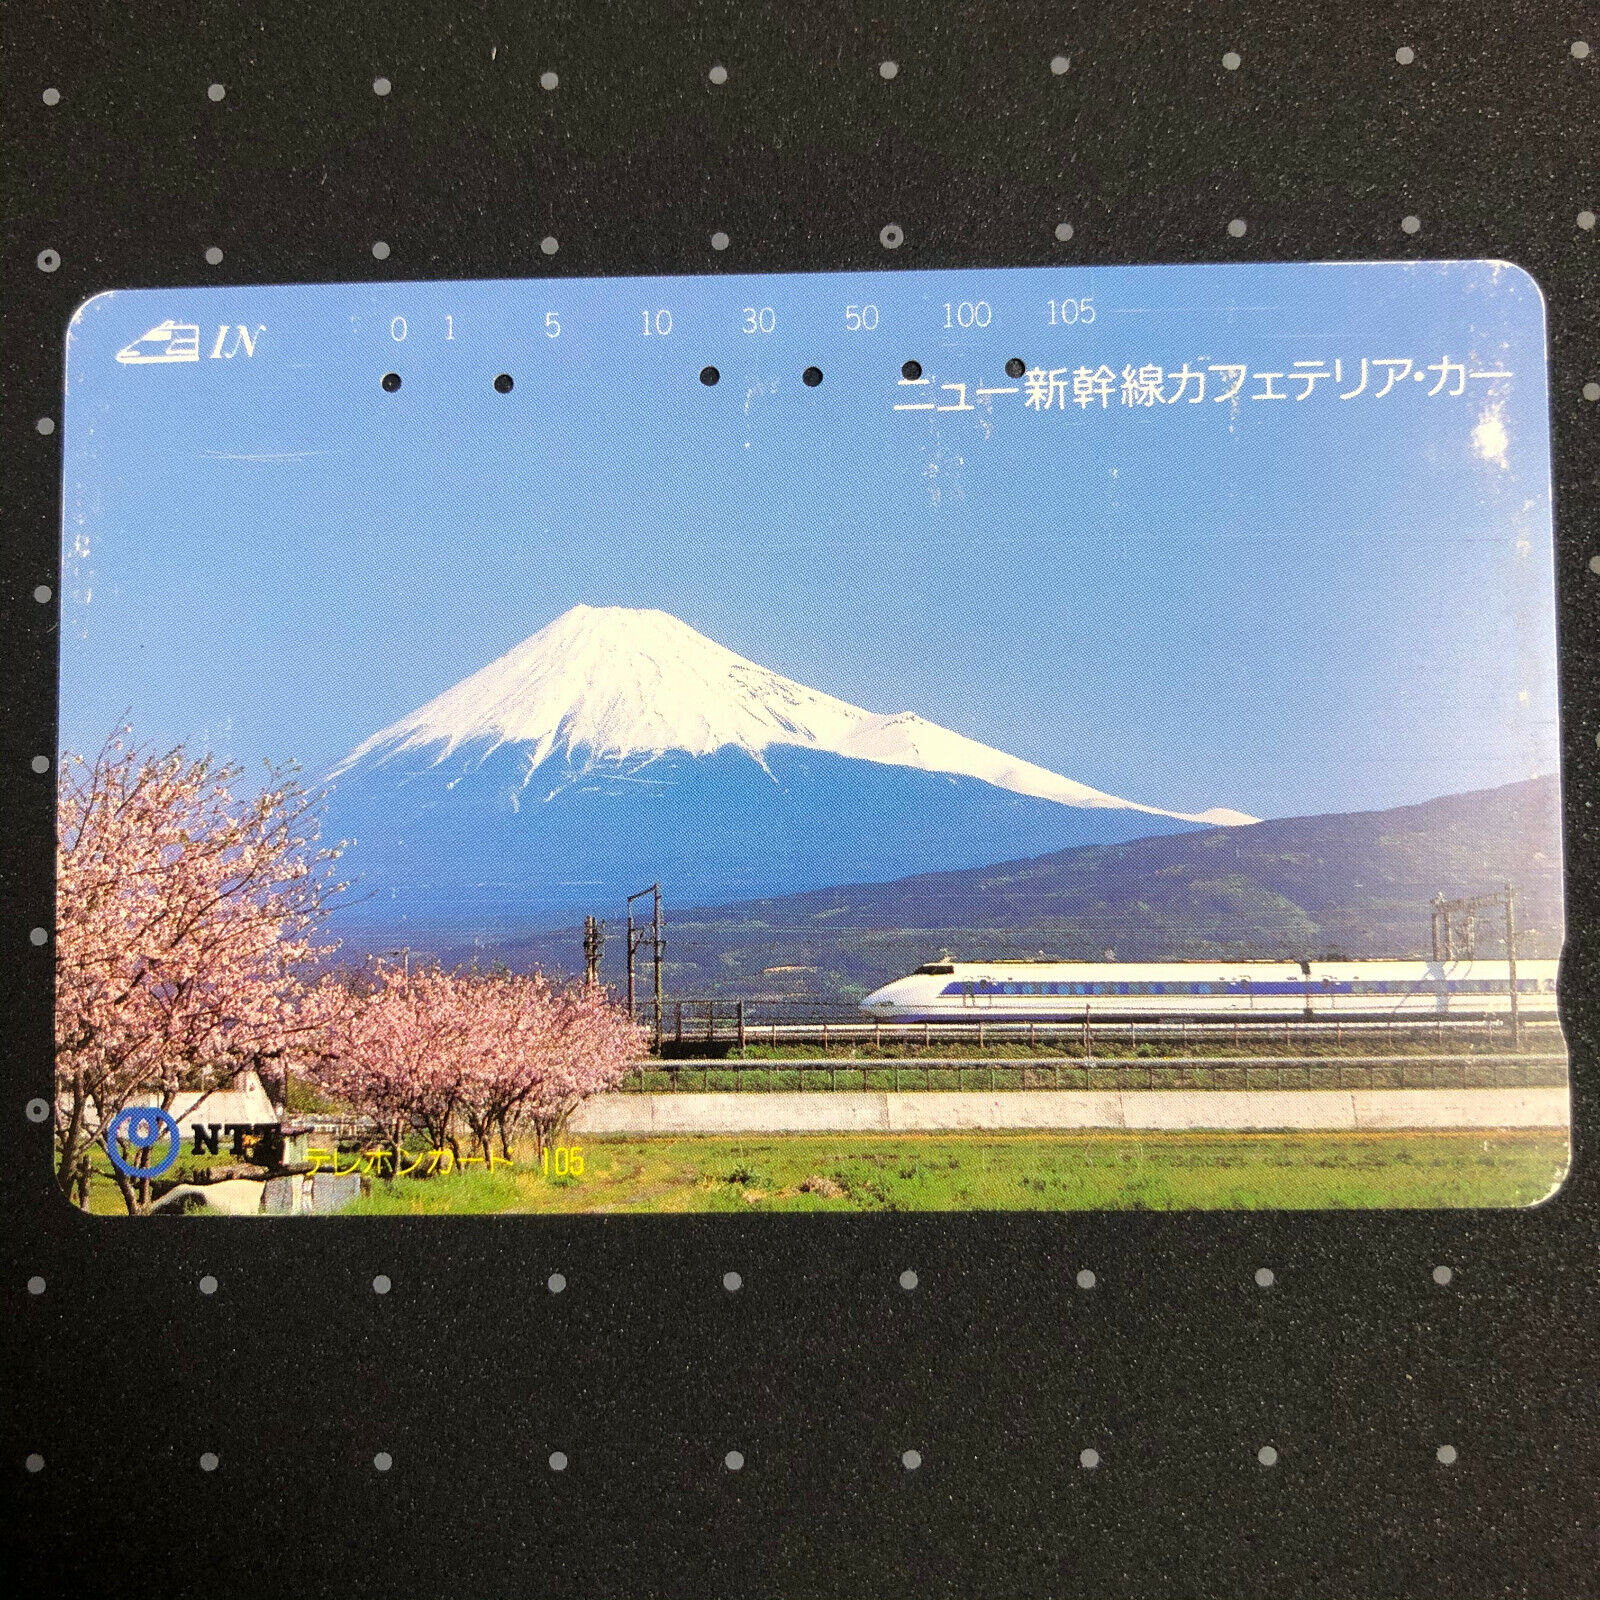 Mt Fuji Japan Phone Card Telephone Mountain used can't use 1988 retro TL008